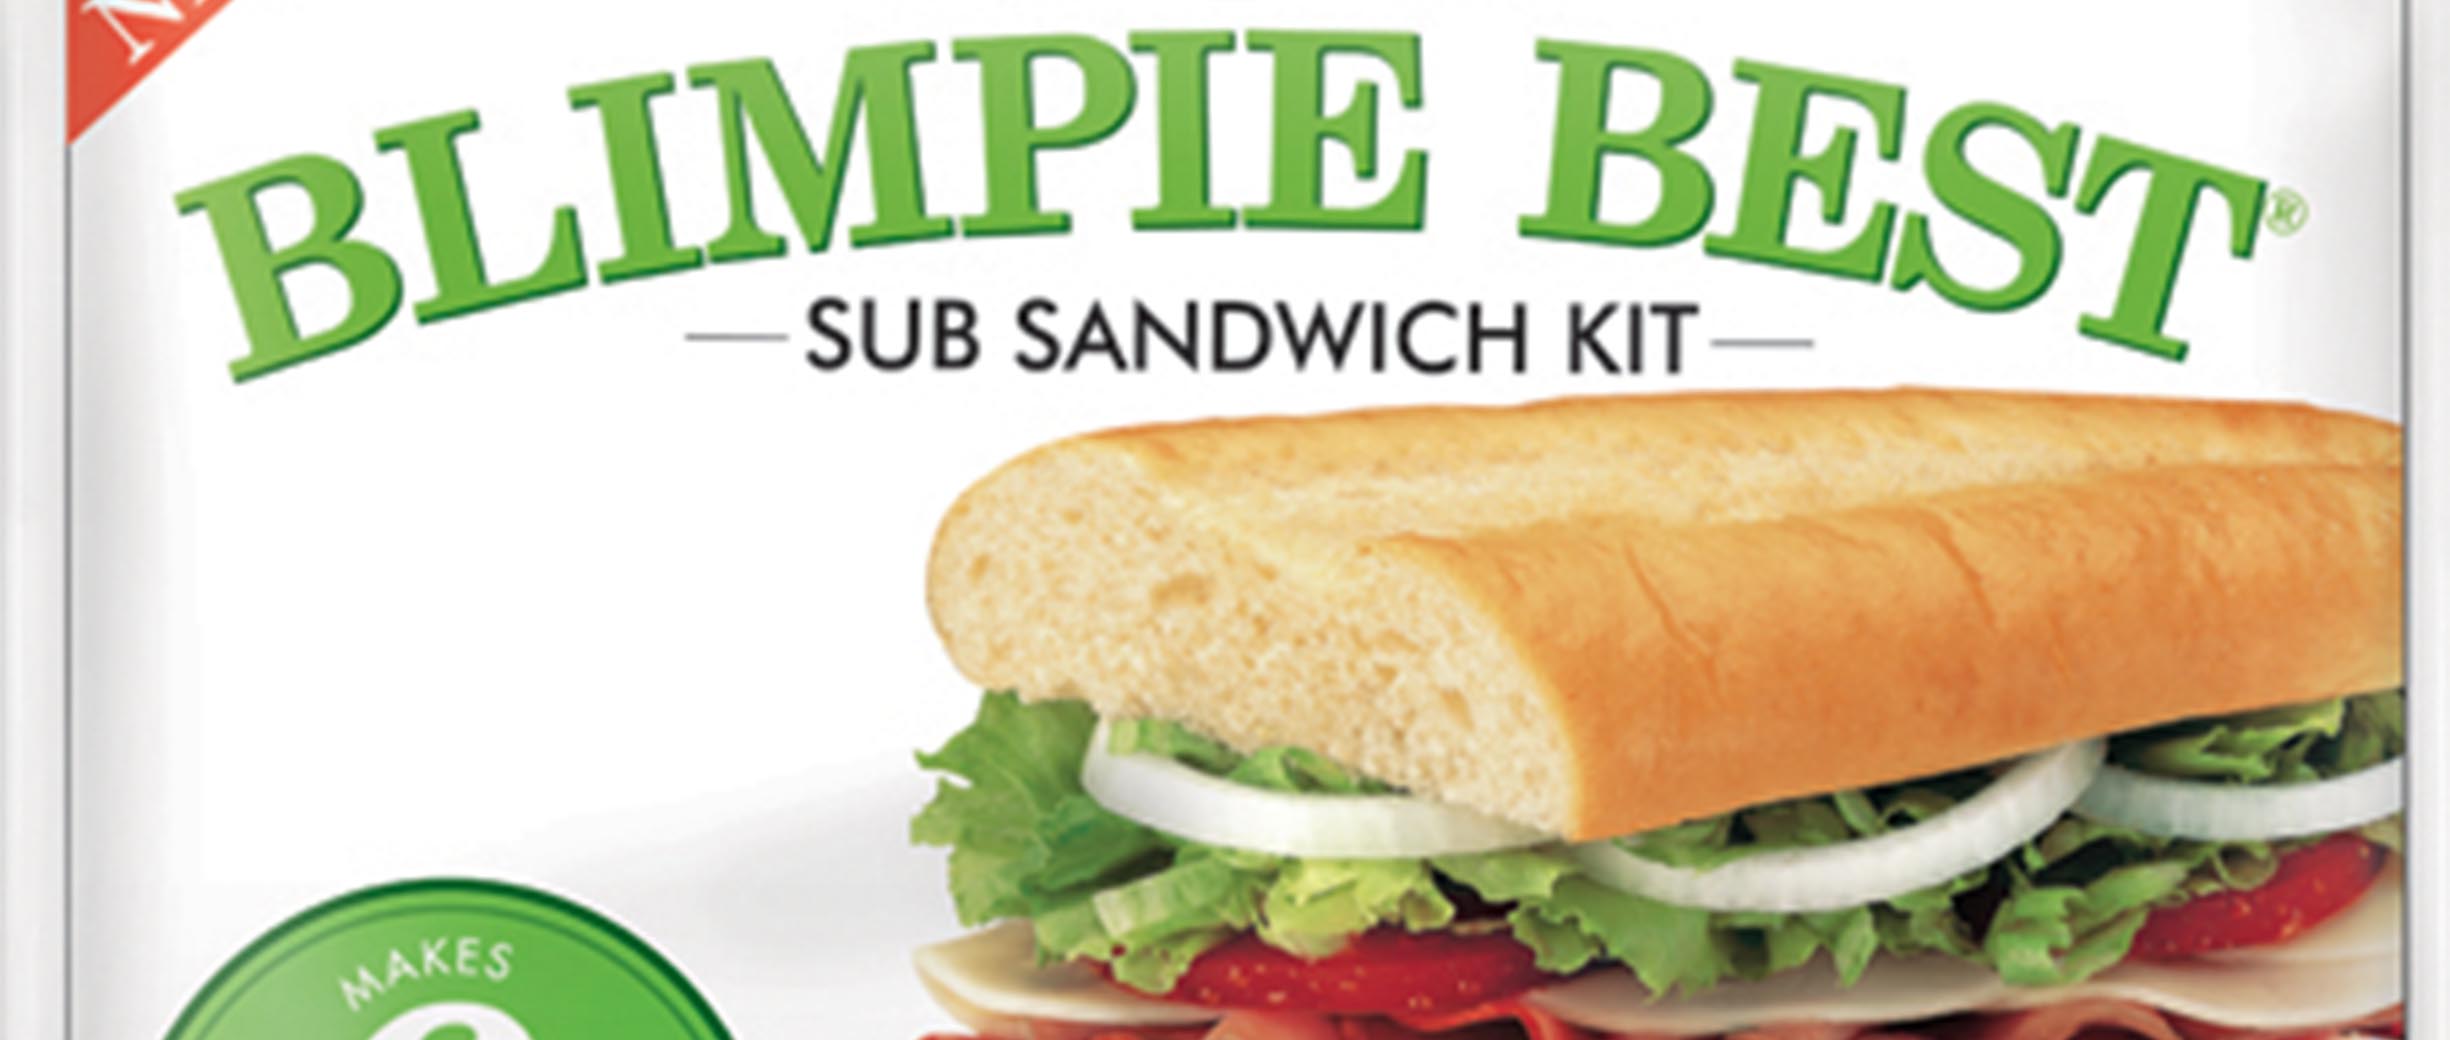 Blimpie Best Sub Sandwich